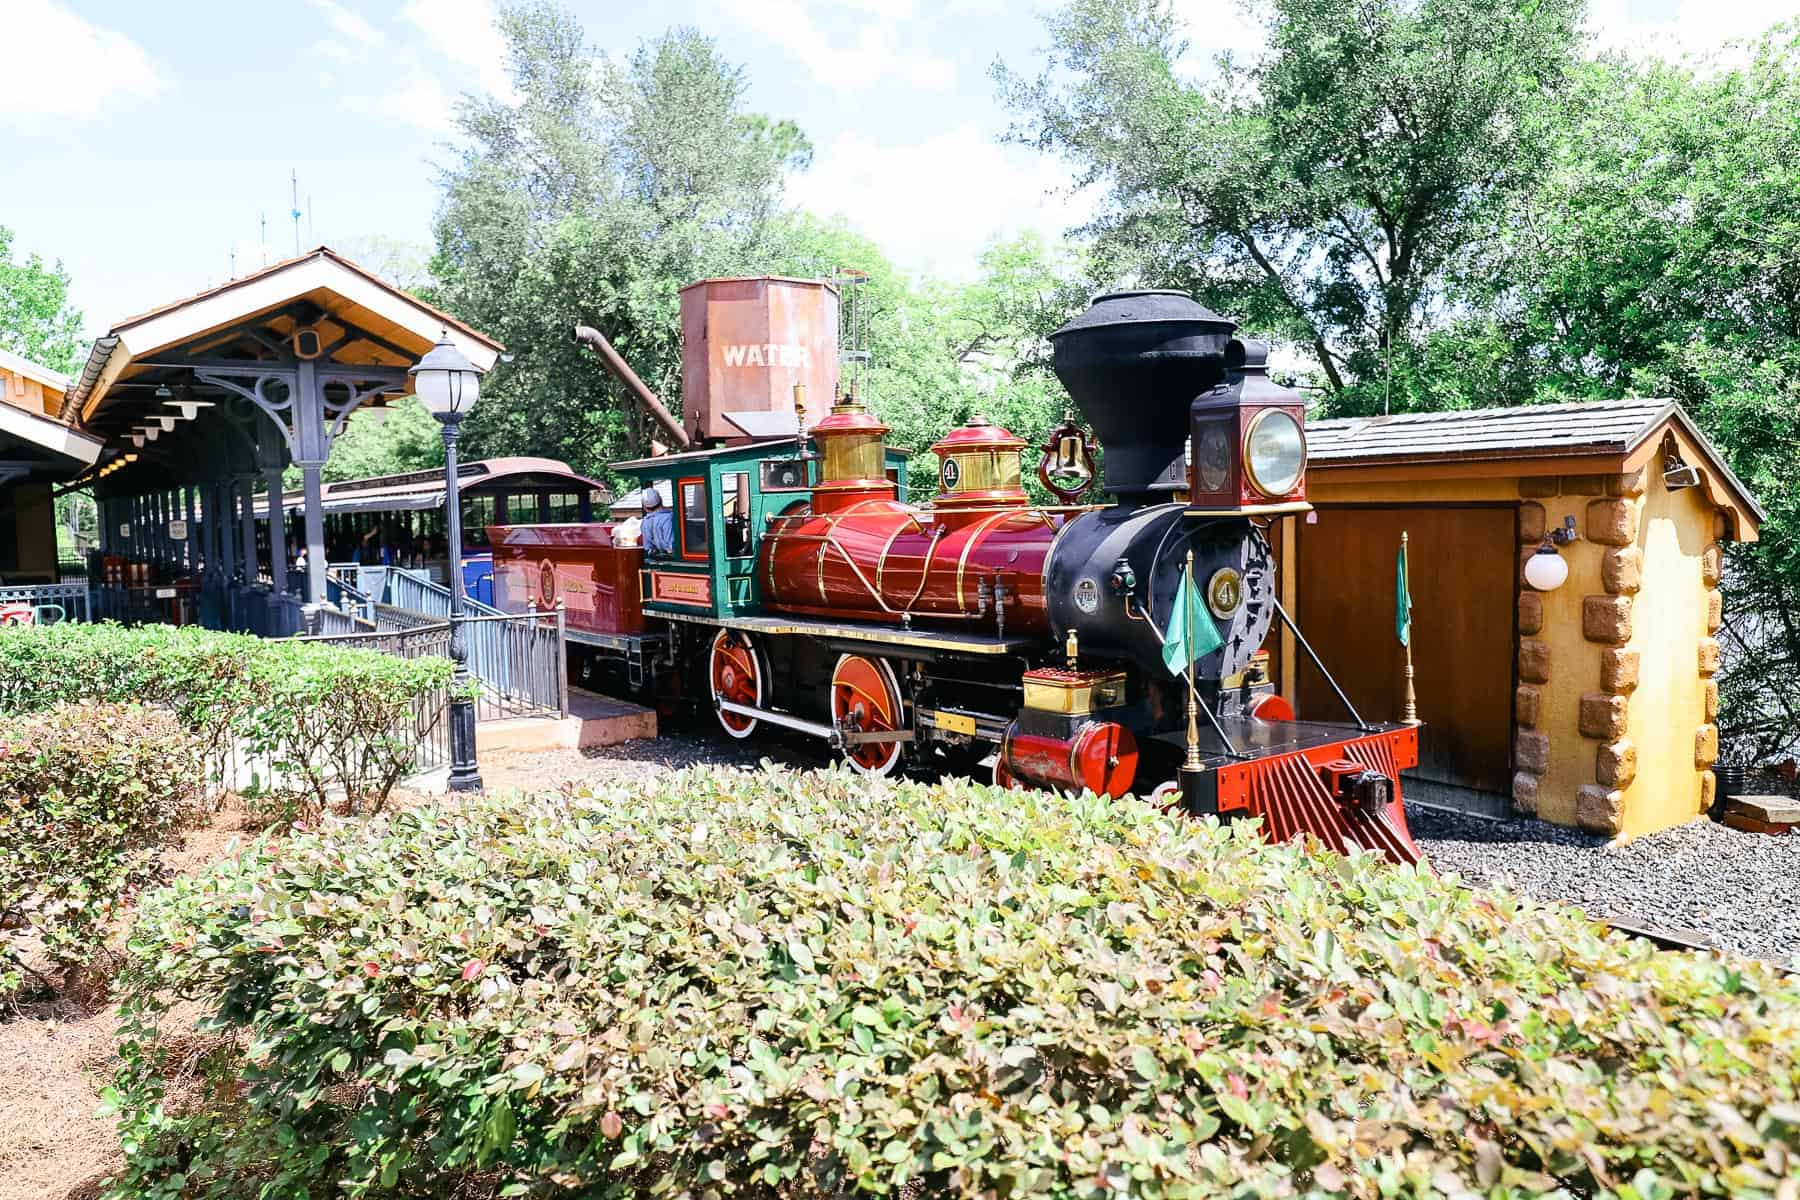 Fantasyland Station (Walt Disney World Railroad) - WanderDisney